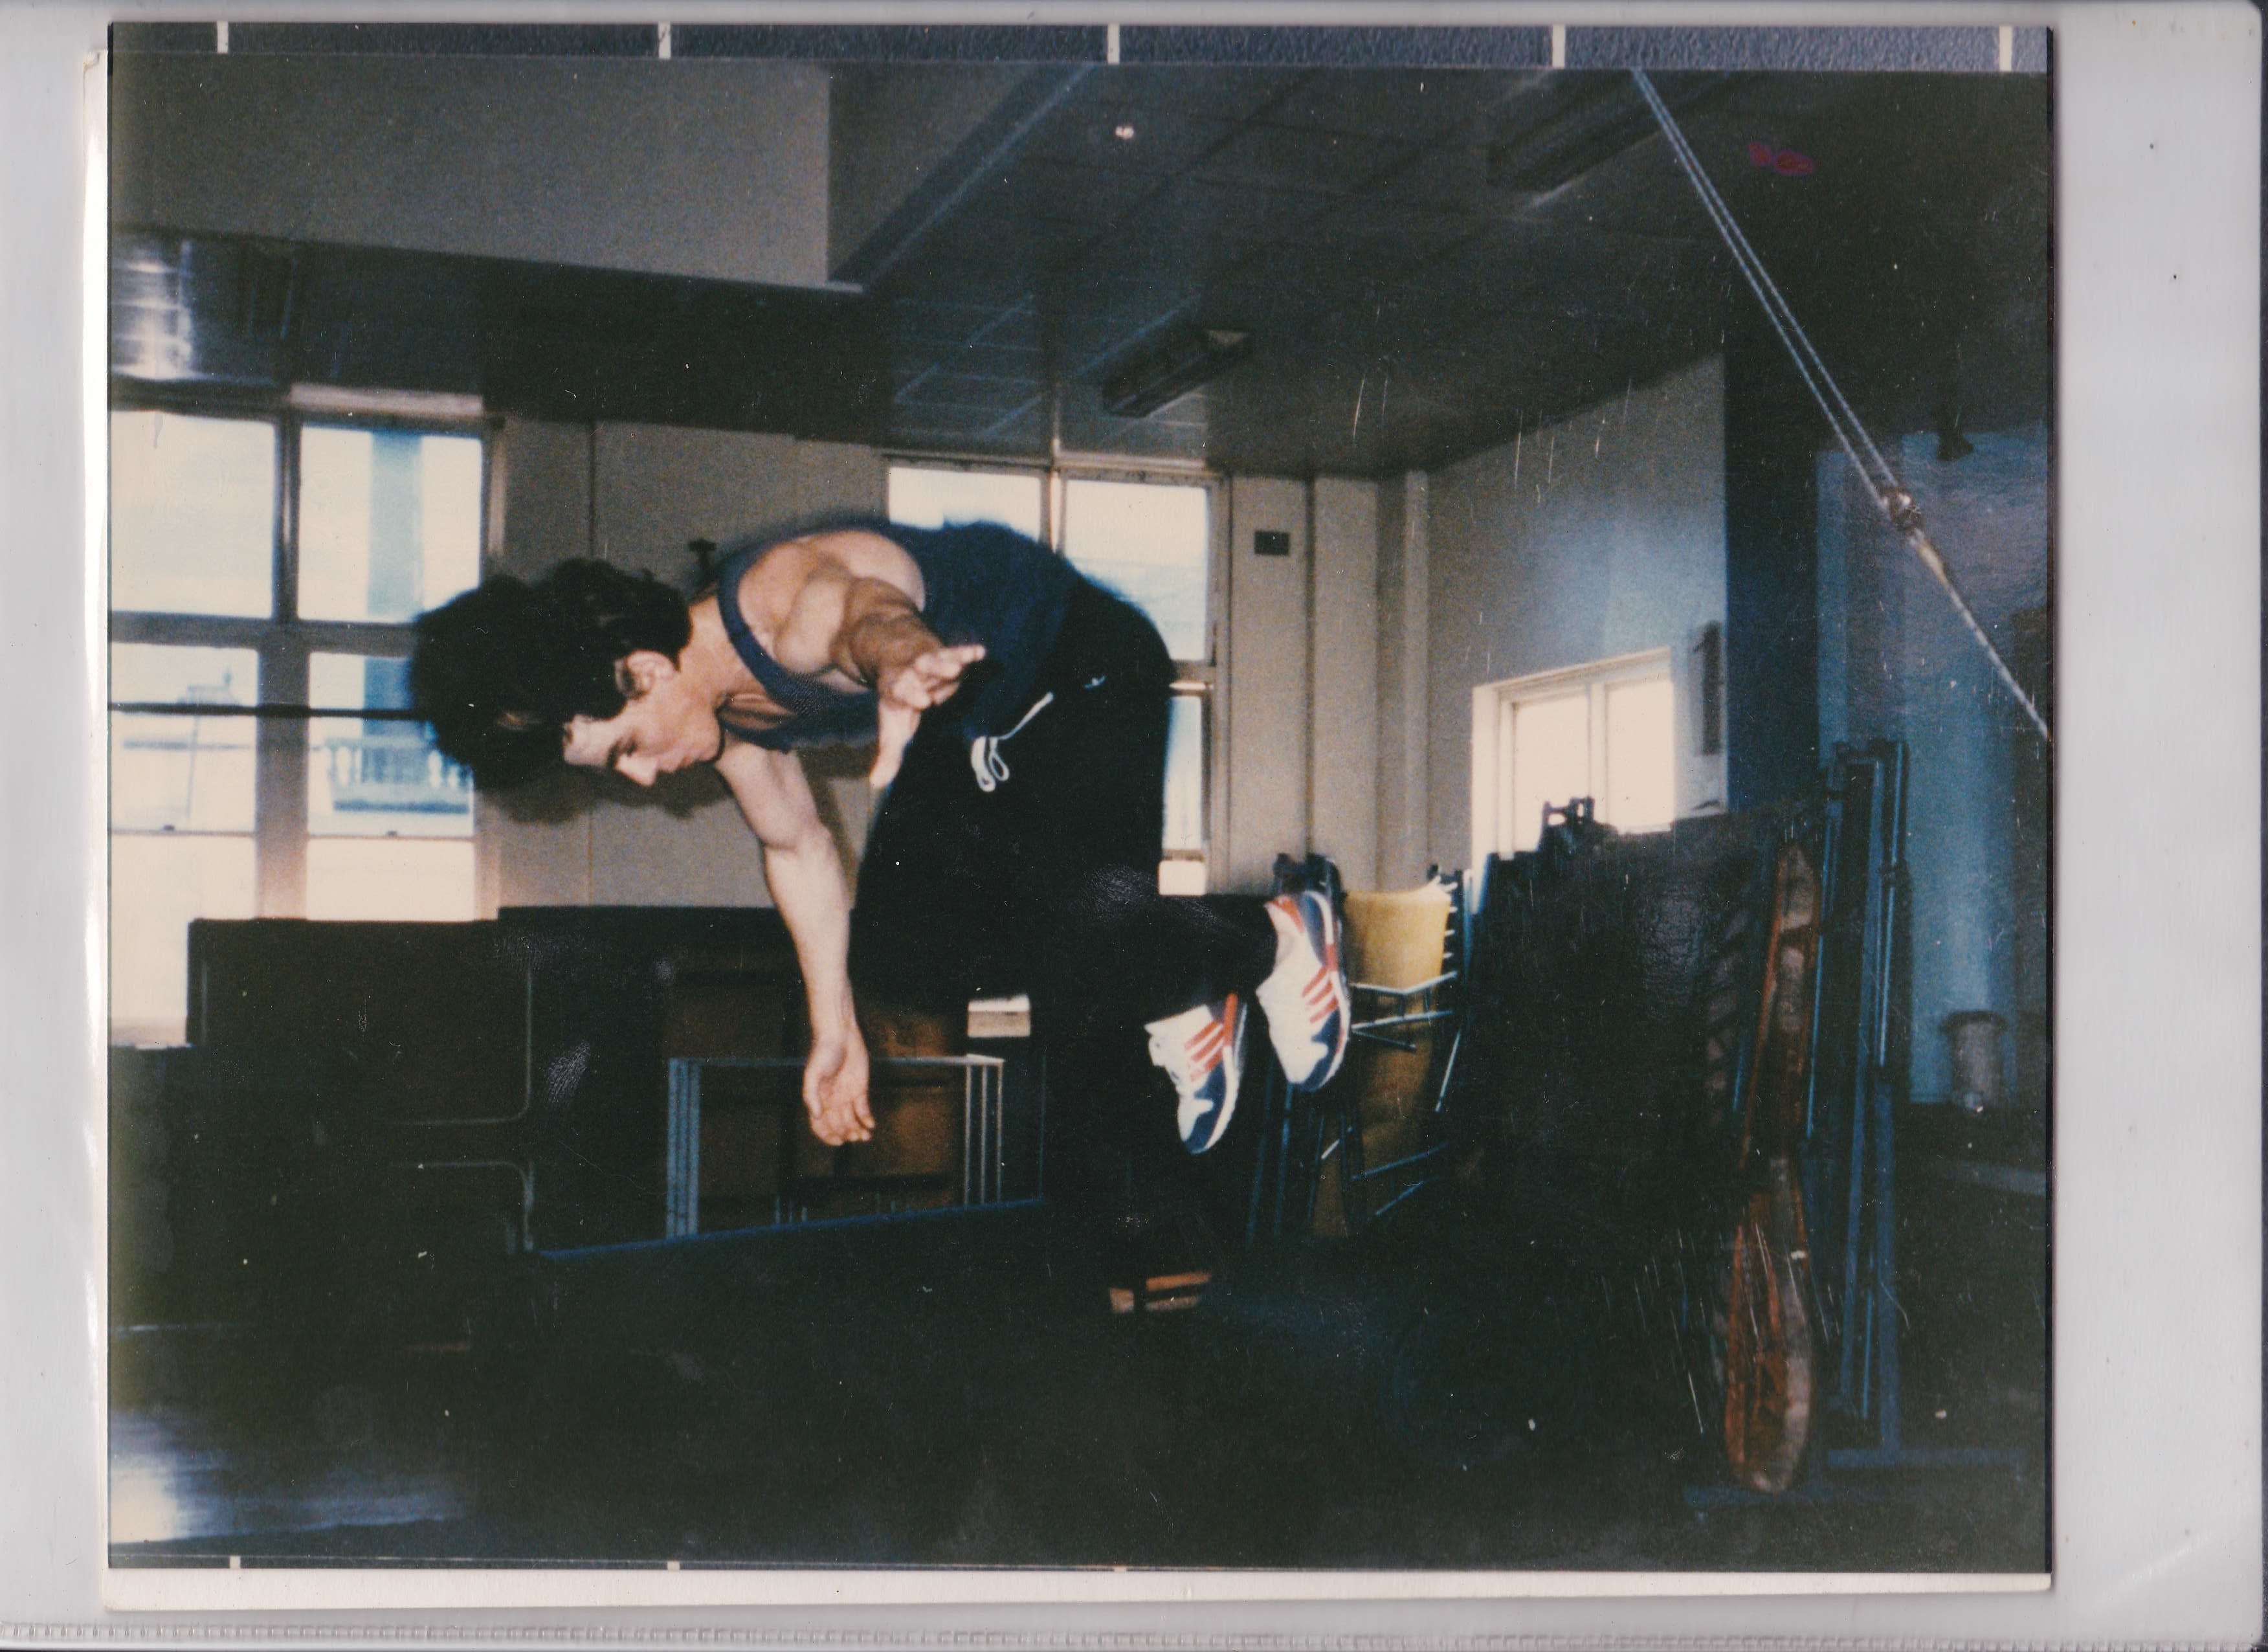 Gymnastics, the Stunt Agency Sydney Australia 1986